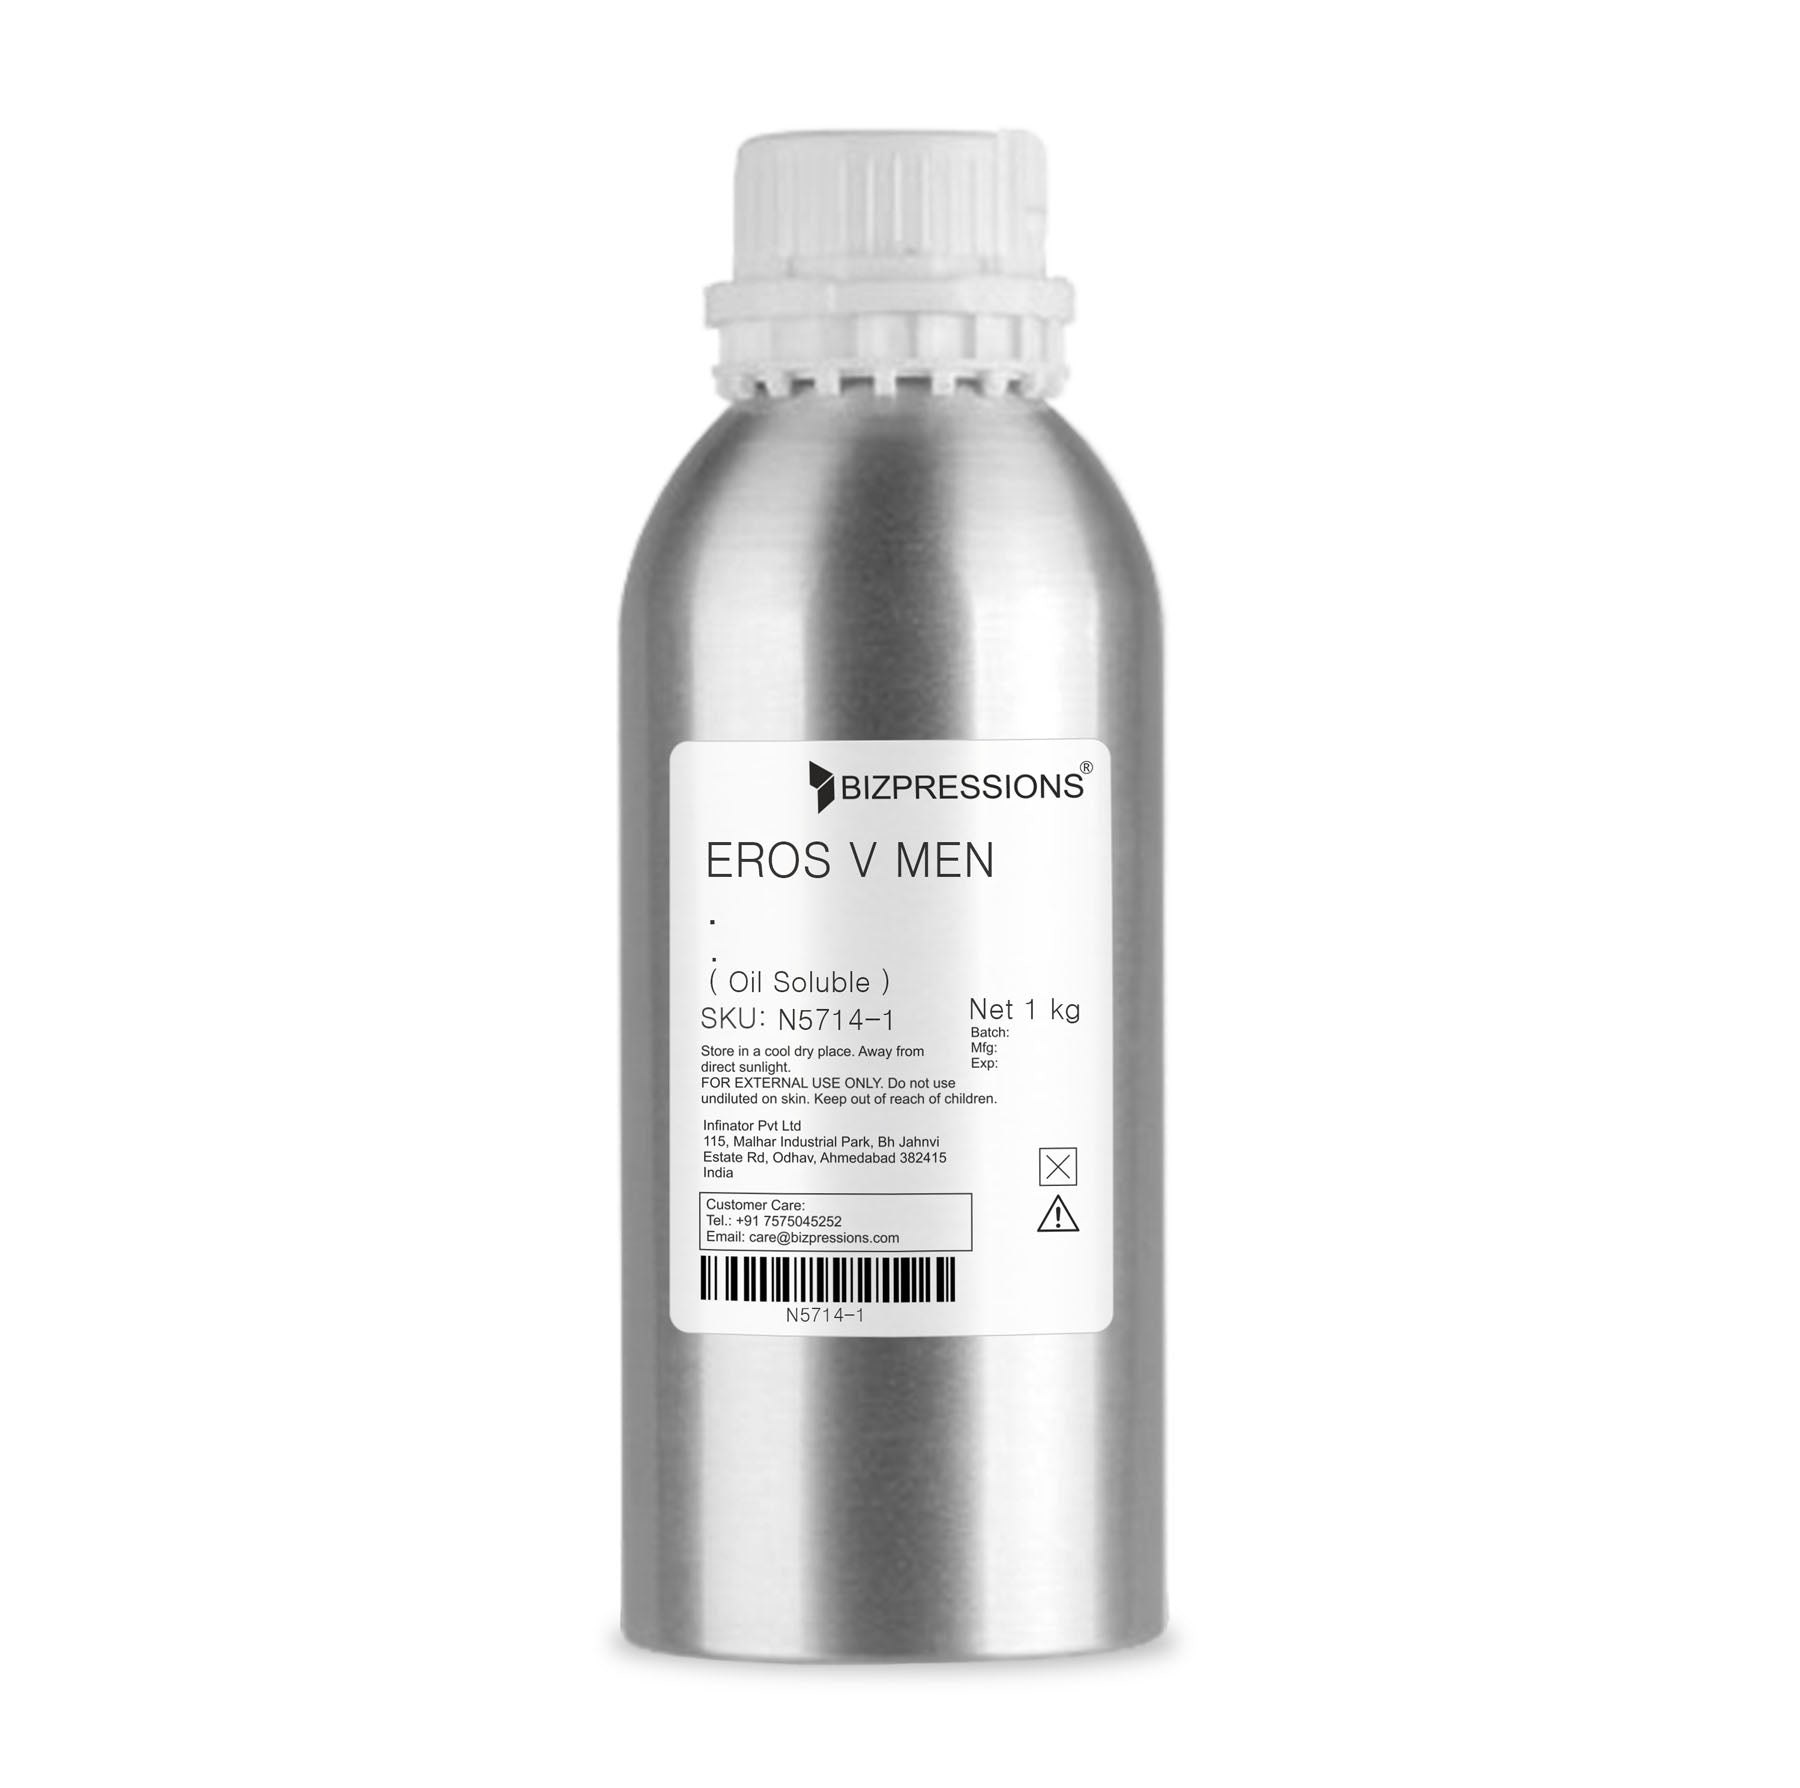 EROS V MEN - Fragrance ( Oil Soluble ) - 1 kg